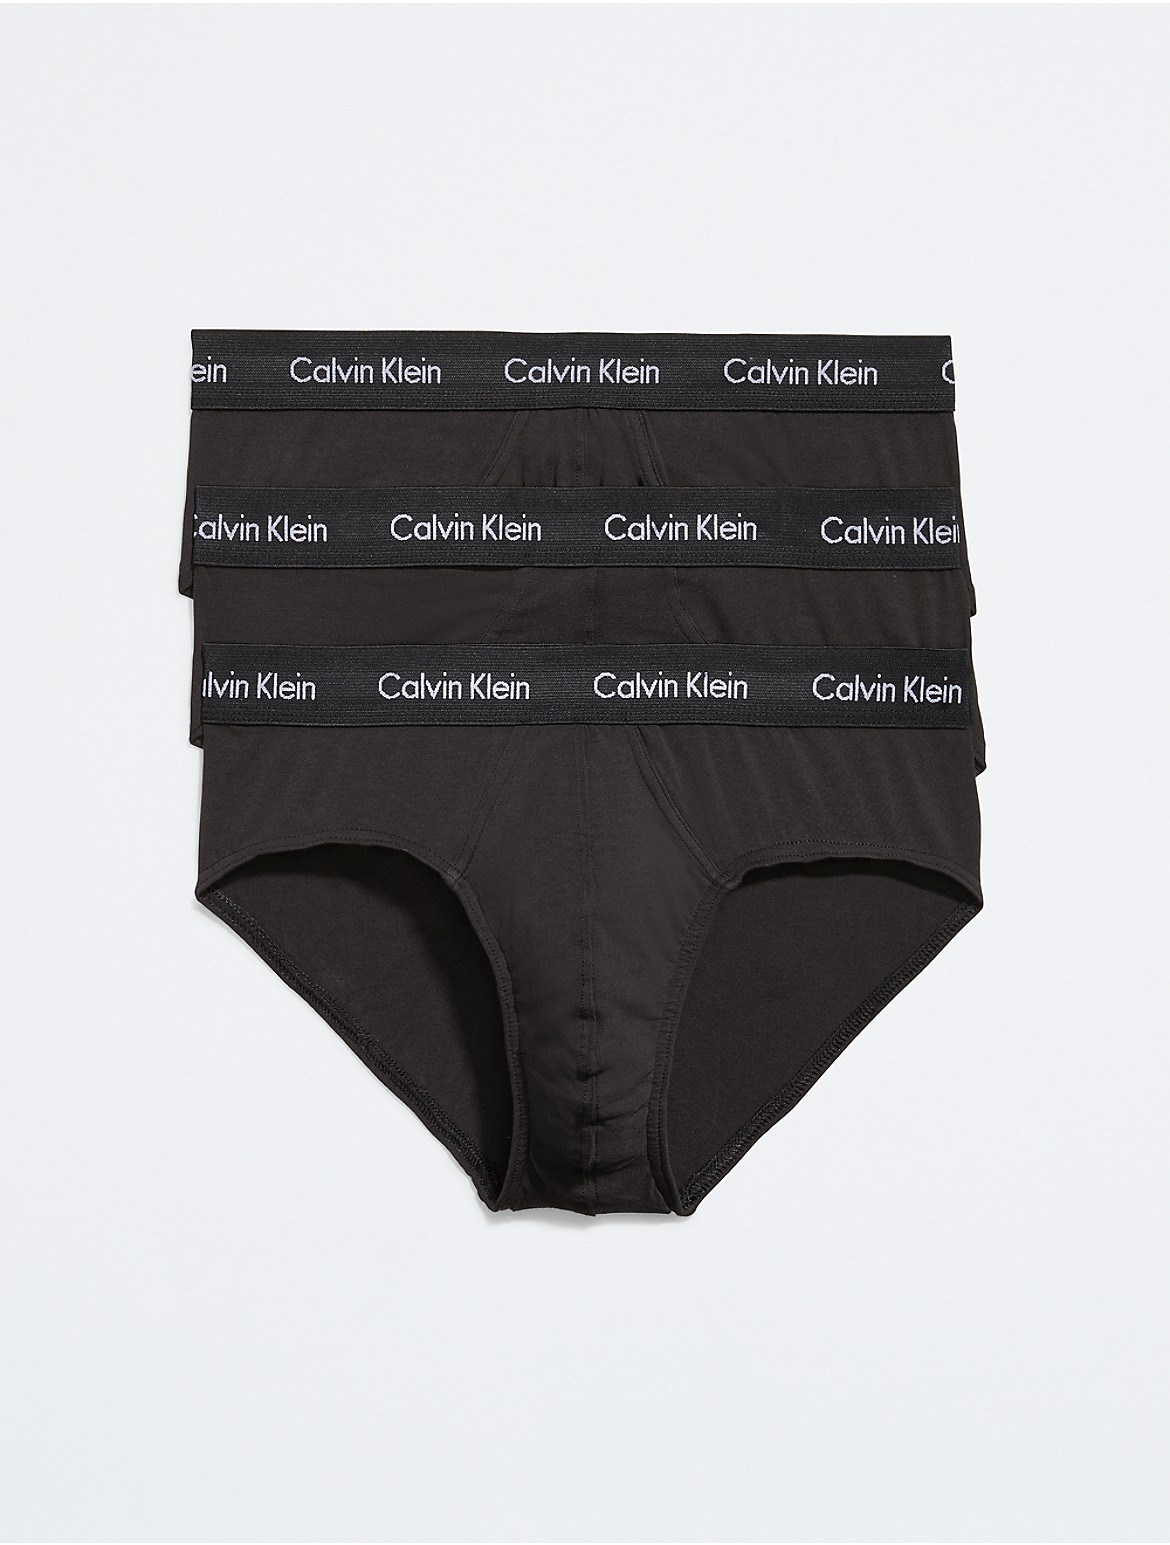 Calvin Klein Men's Cotton Stretch 3-Pack Hip Brief - Black - XL